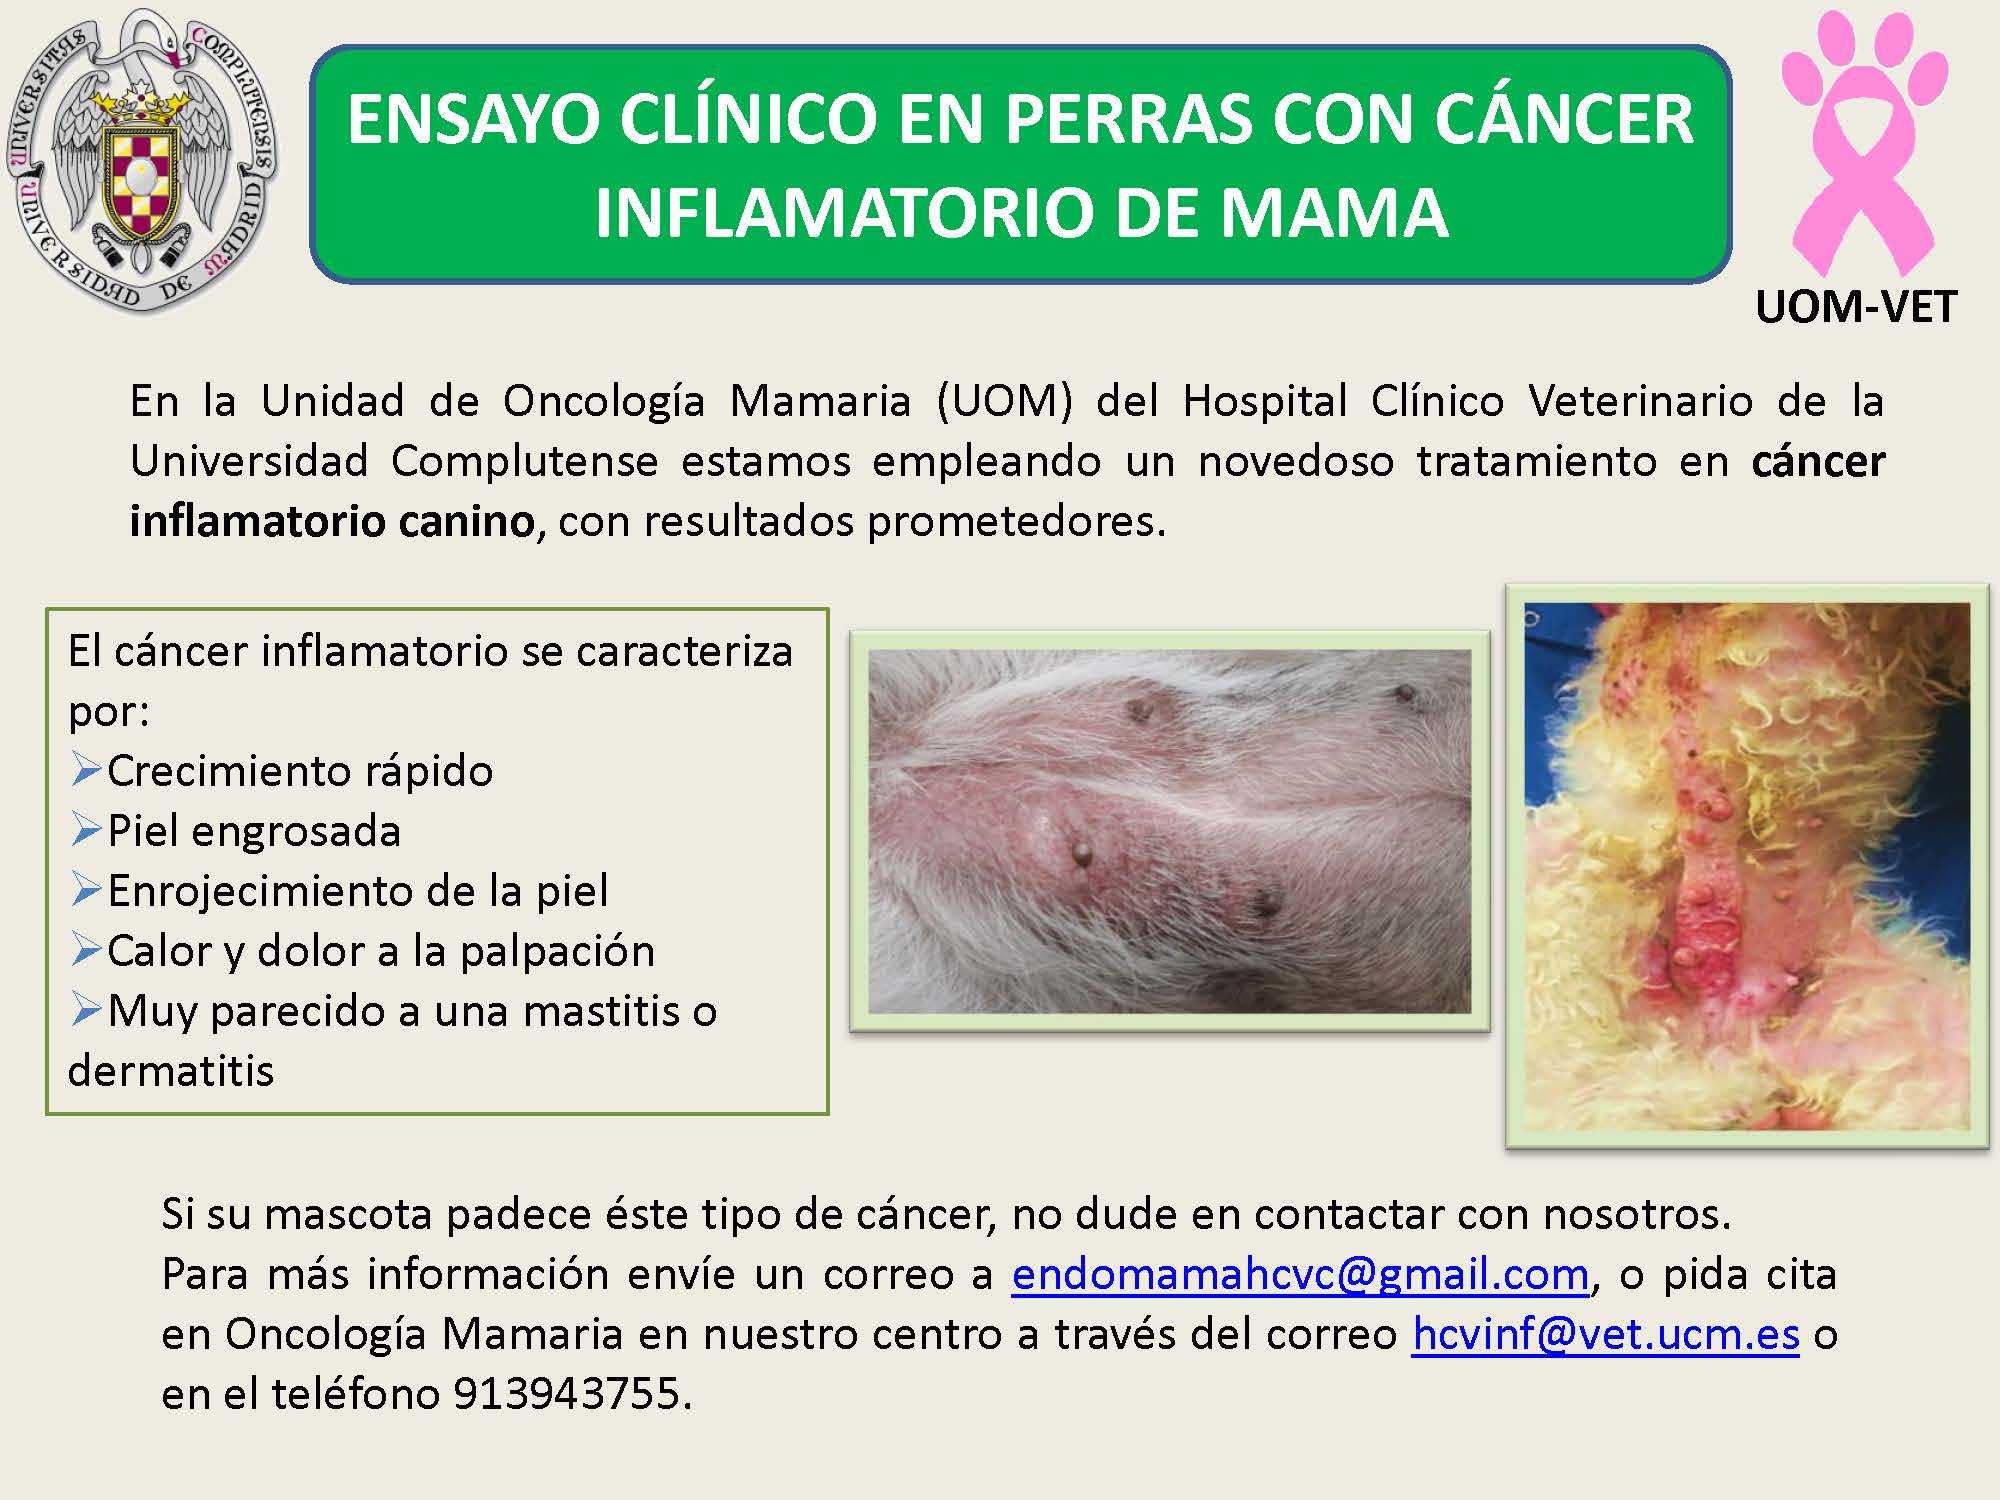 Ensayo clínico en perras con cáncer inflamatorio de mama